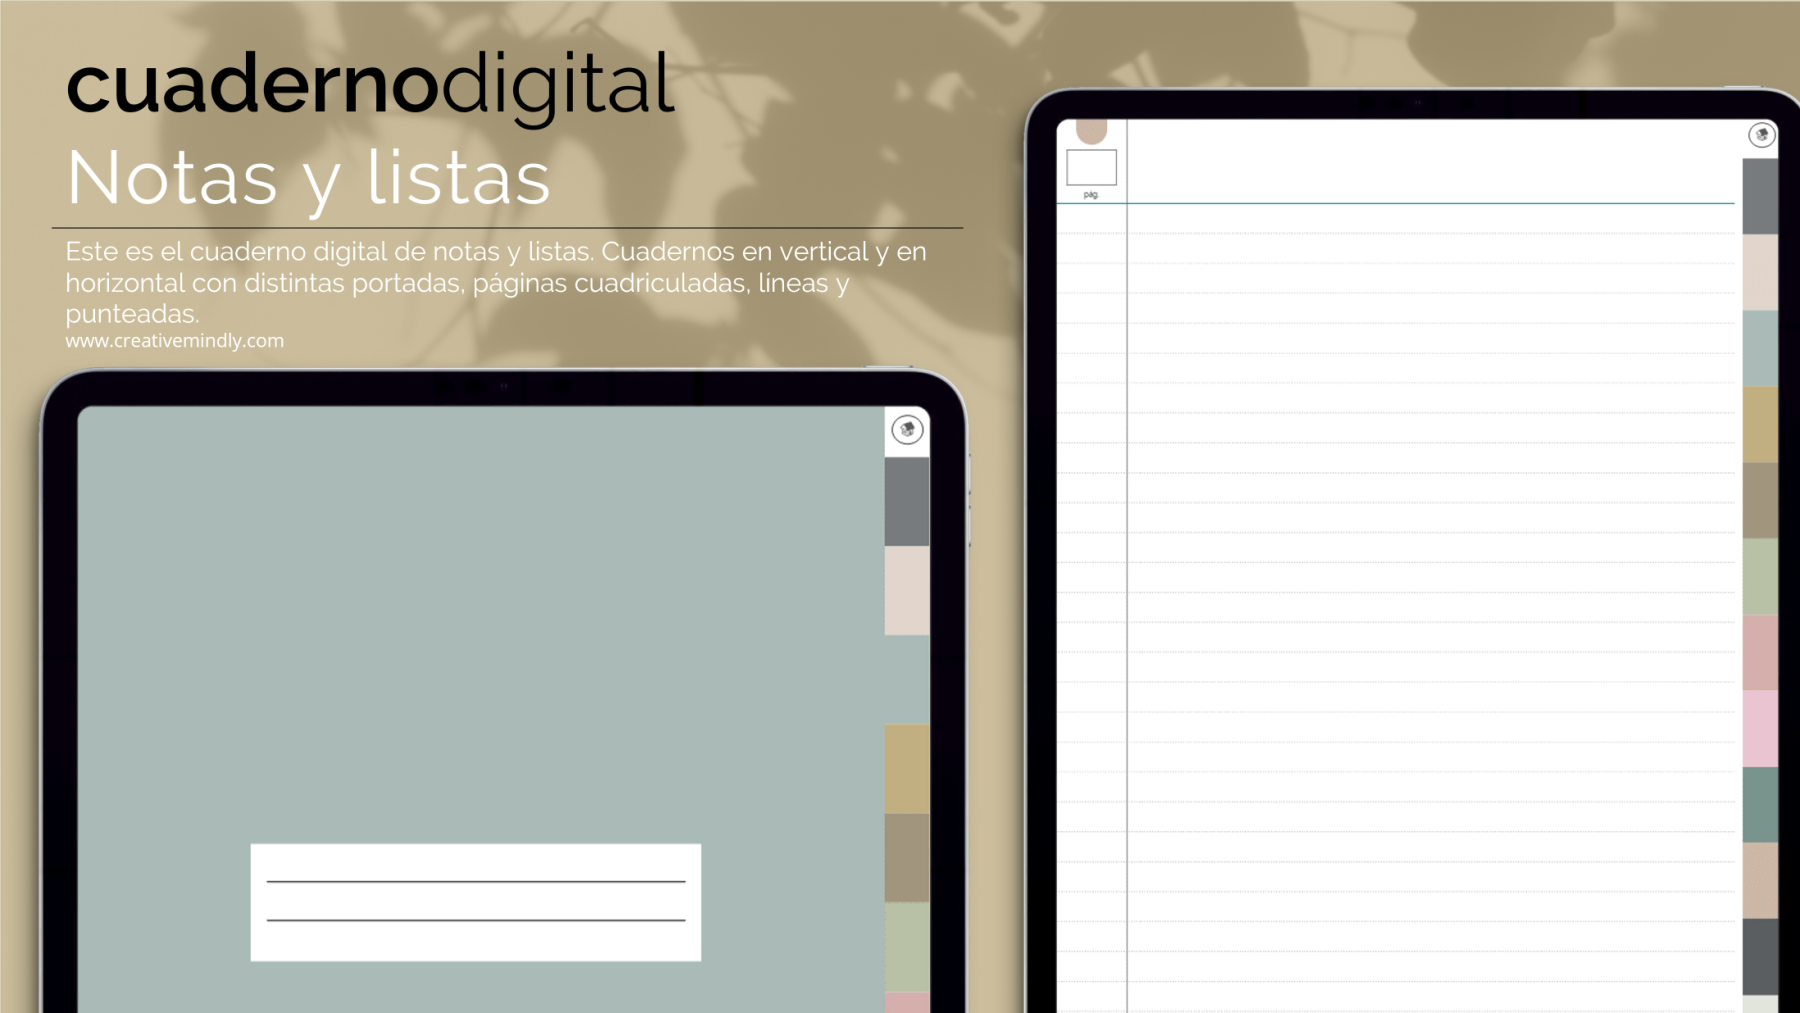 Social ovtt: Cuaderno digital